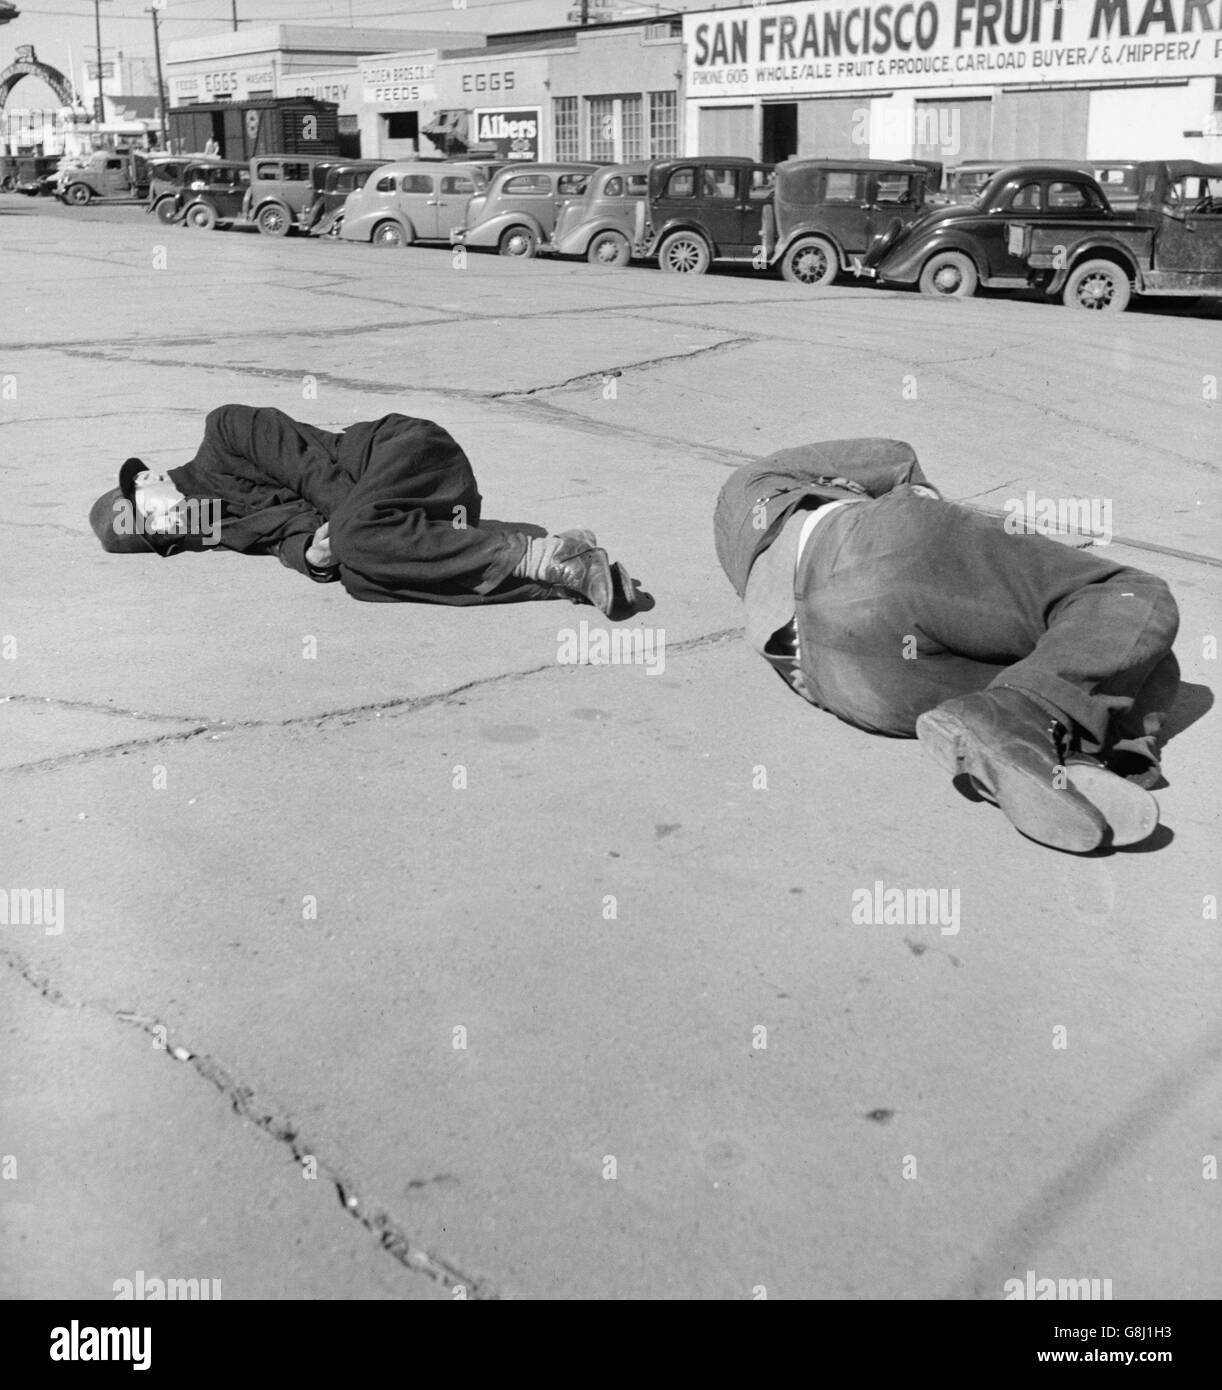 Zwei Männer schlafen auf Bürgersteig "Skid Row", Howard Street, San Francisco, Kalifornien, USA, Dorothea Lange für Farm Security Administration, Februar 1937 Stockfoto